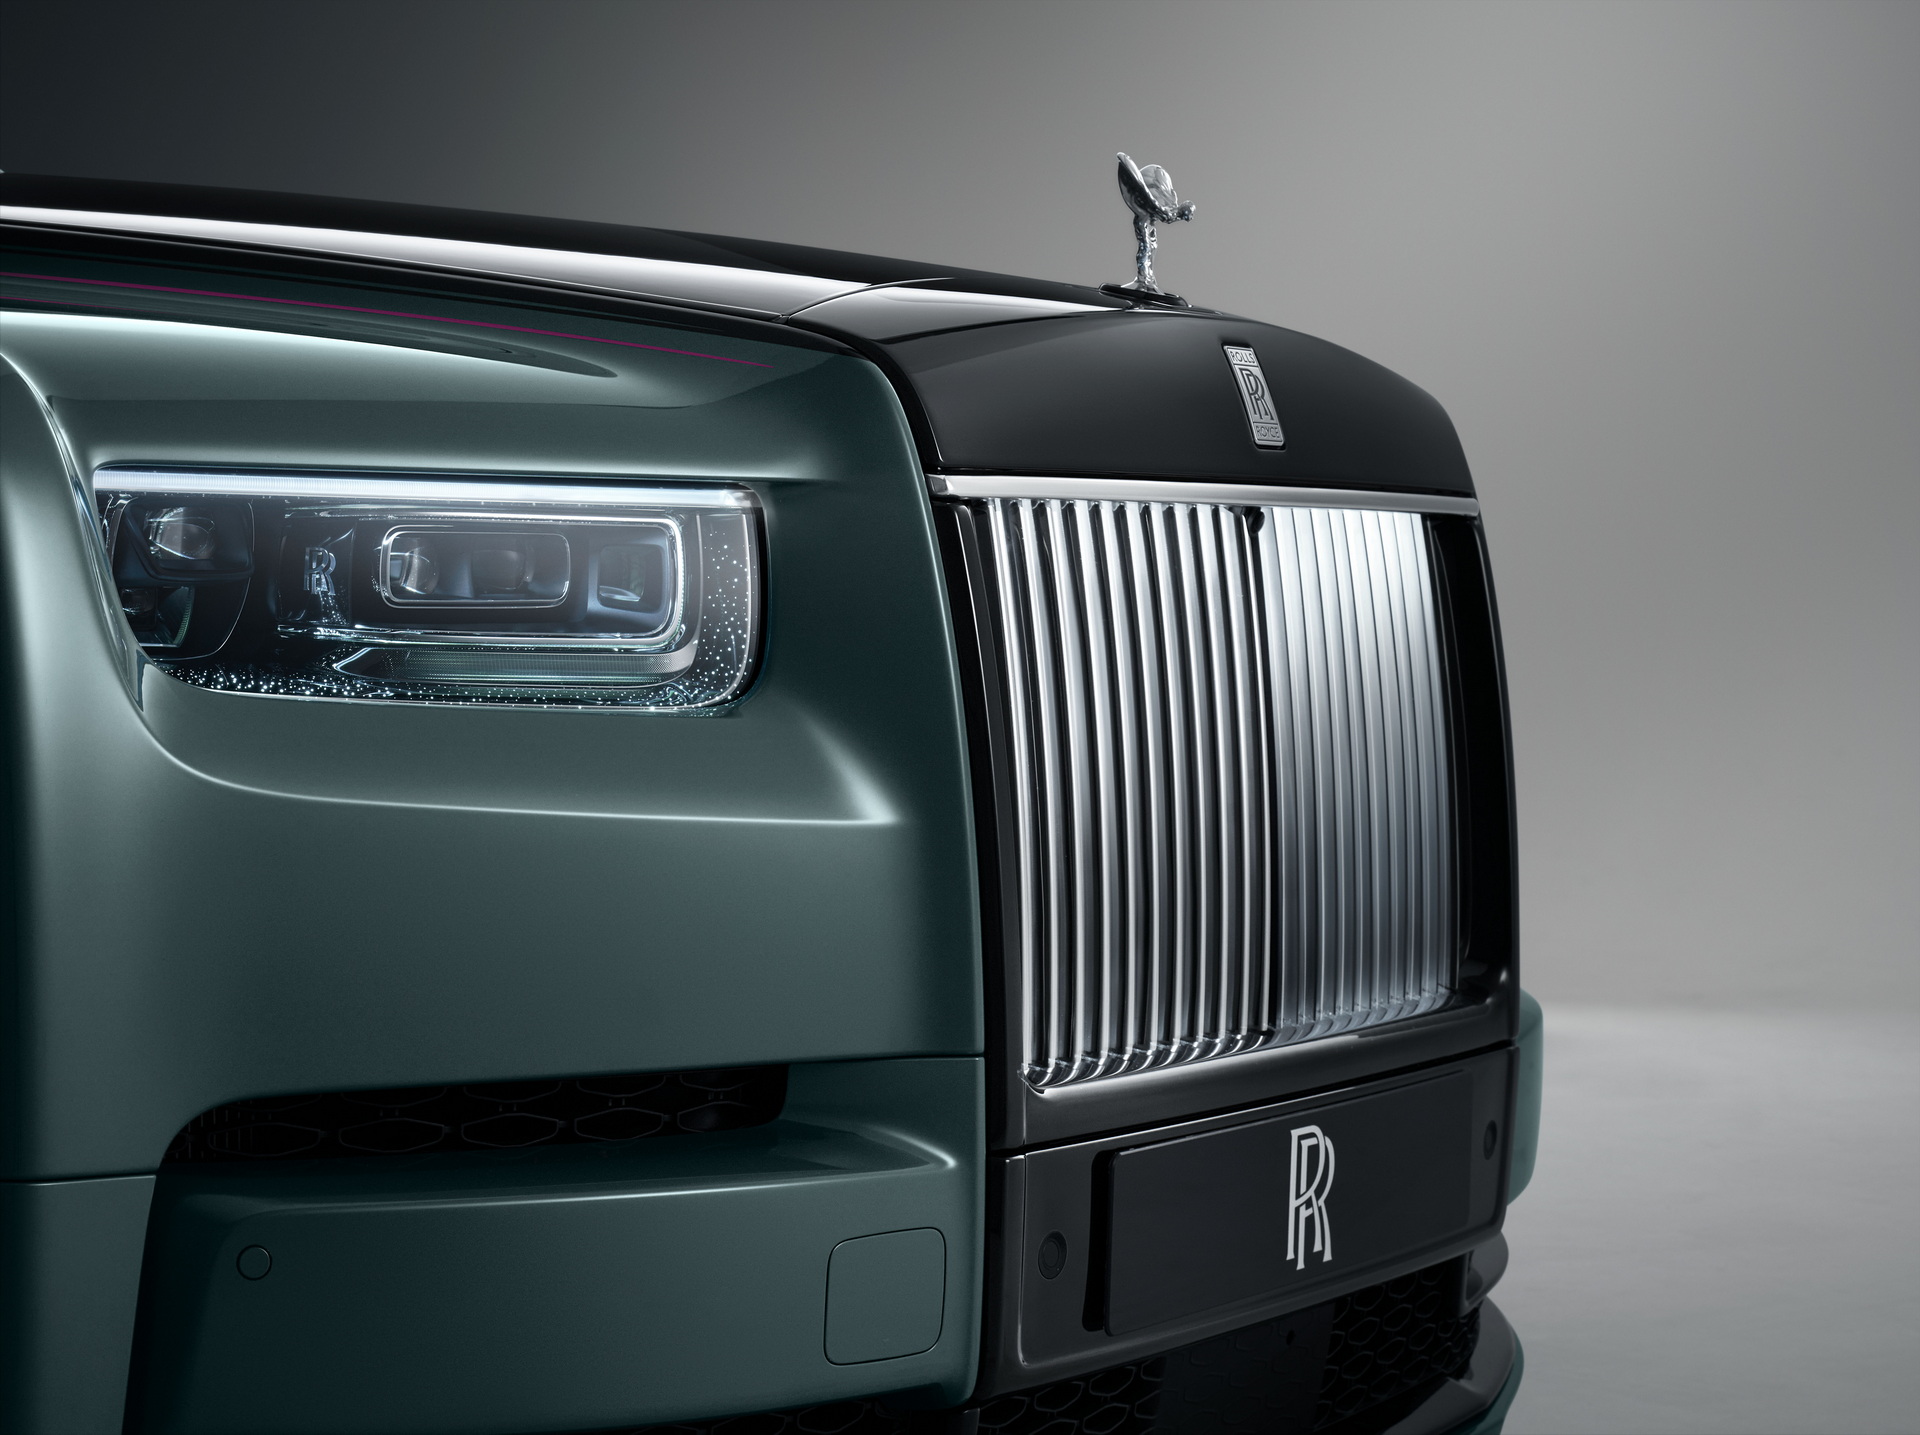 RollsRoyce Phantom Lịch sử hình thành một biểu tượng Phần 2  Rolls Royce Motor Cars HCMC